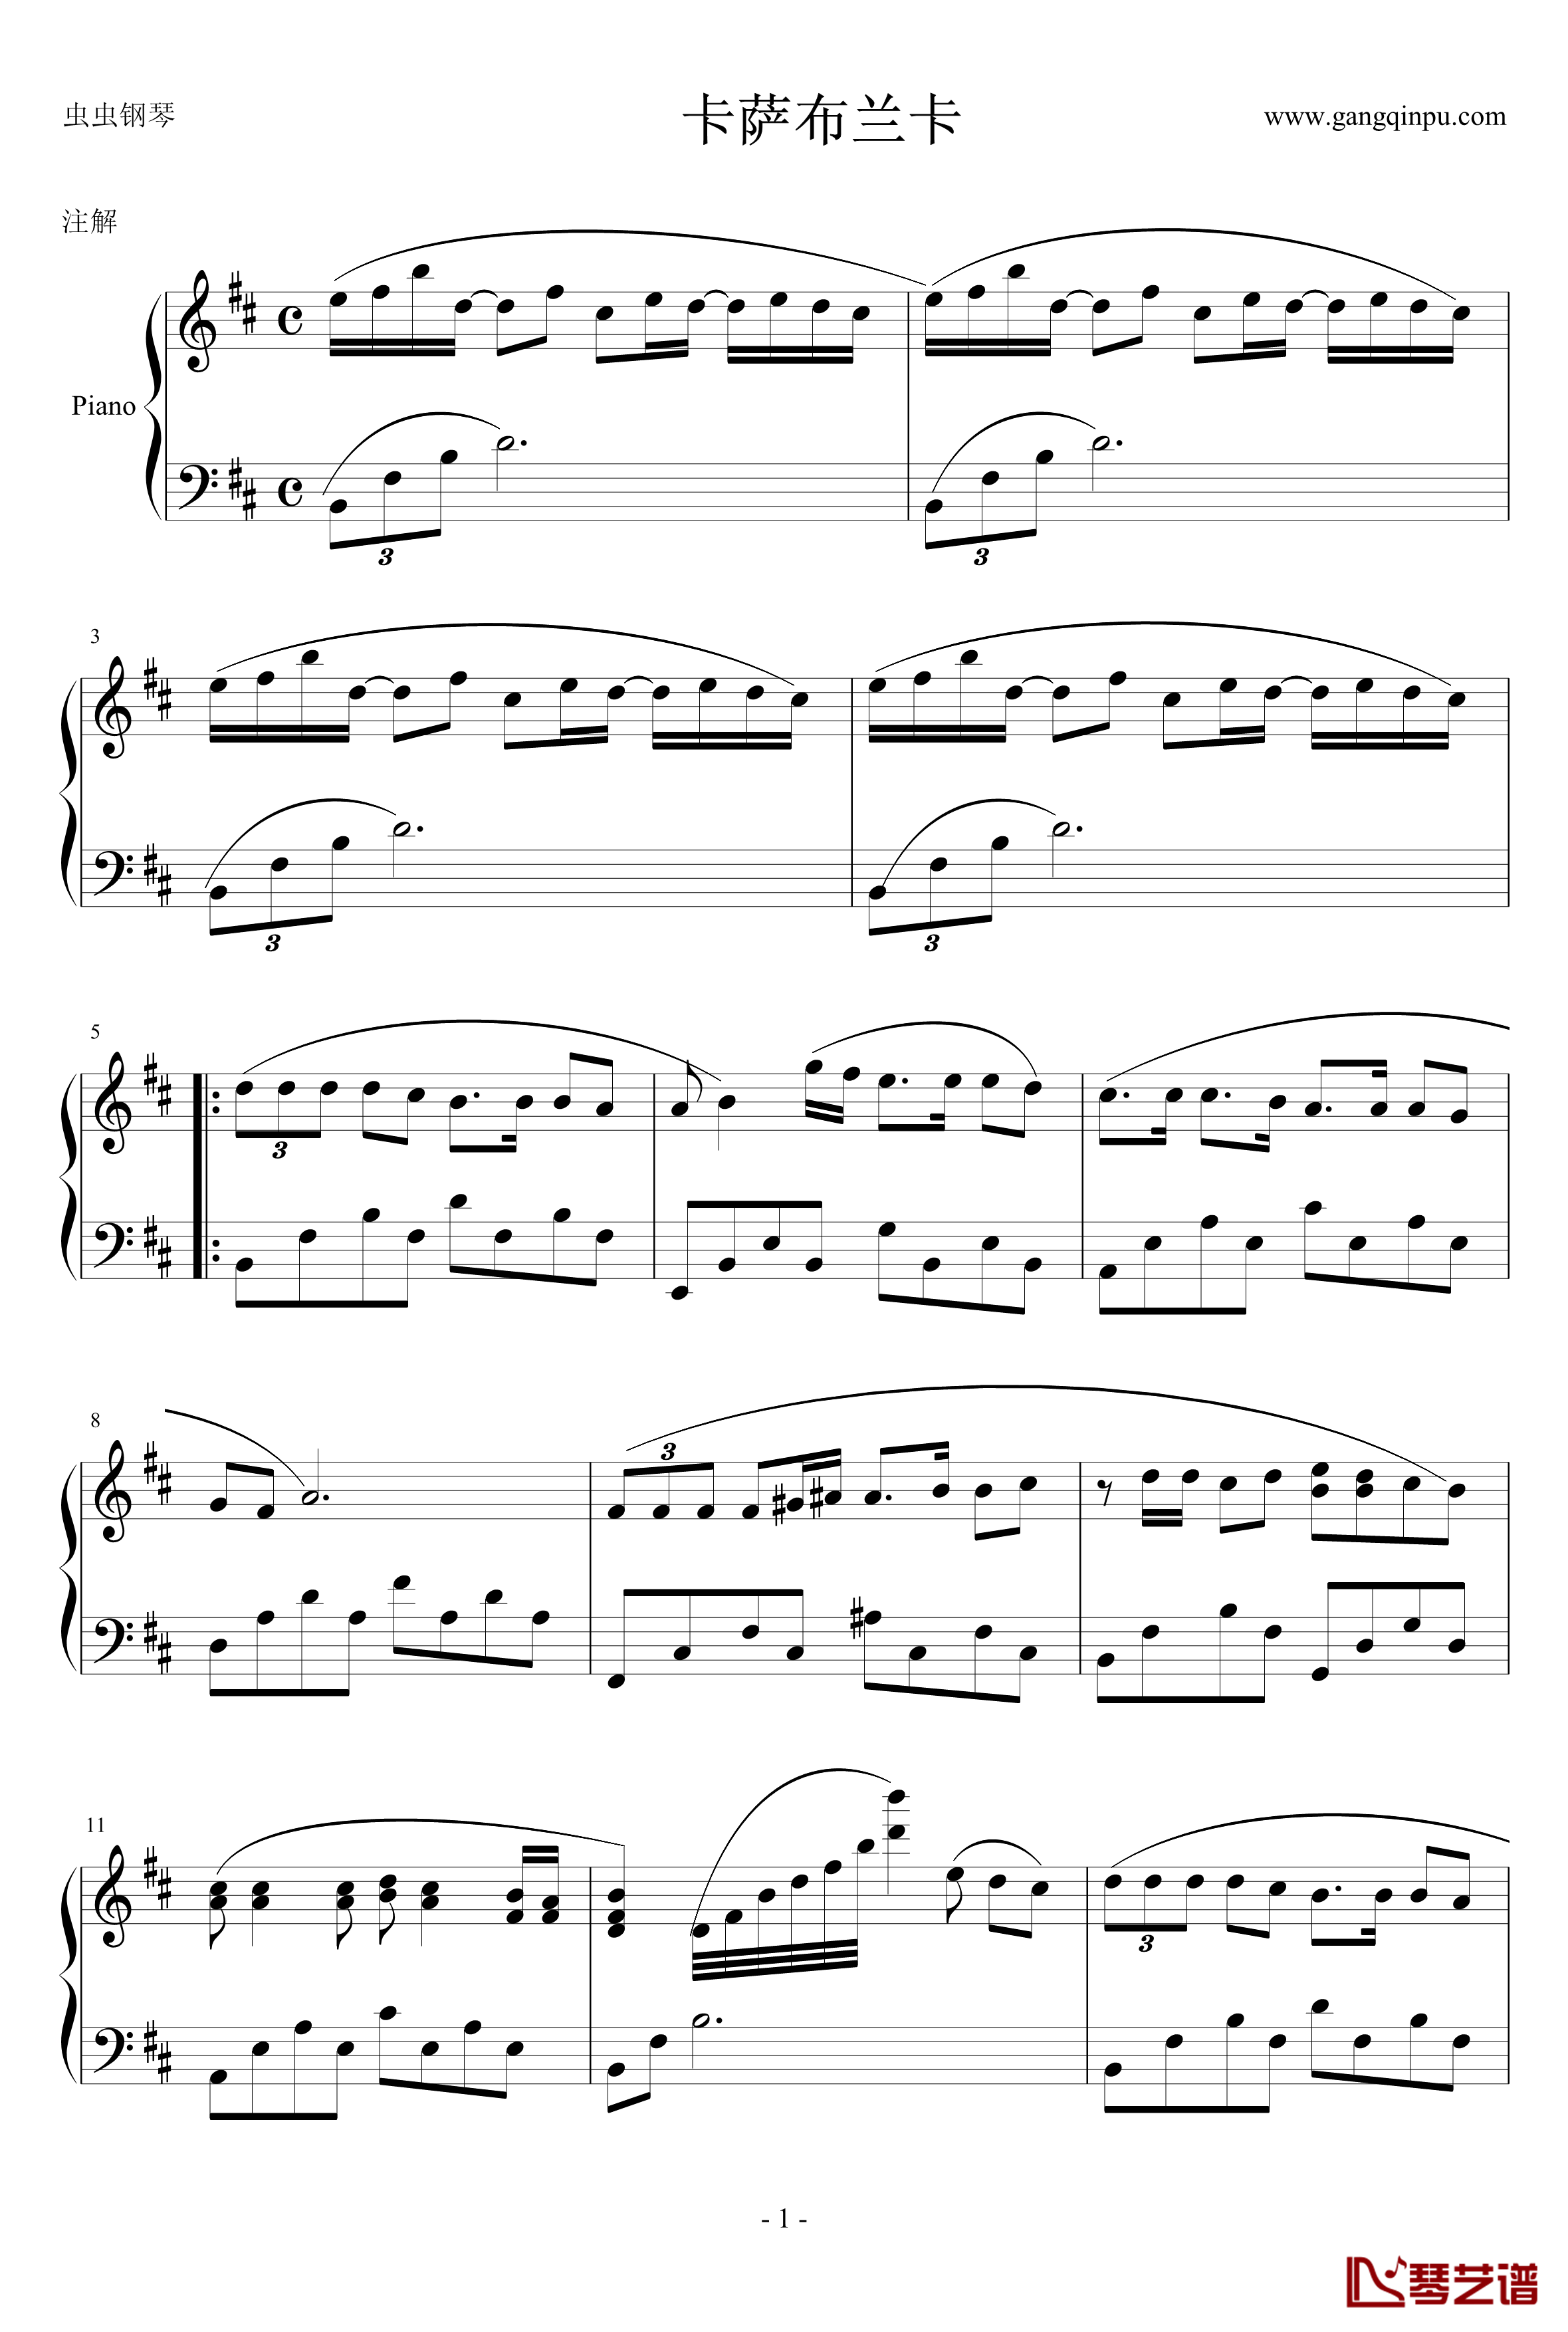 卡萨布兰卡钢琴谱-贝蒂希金斯1